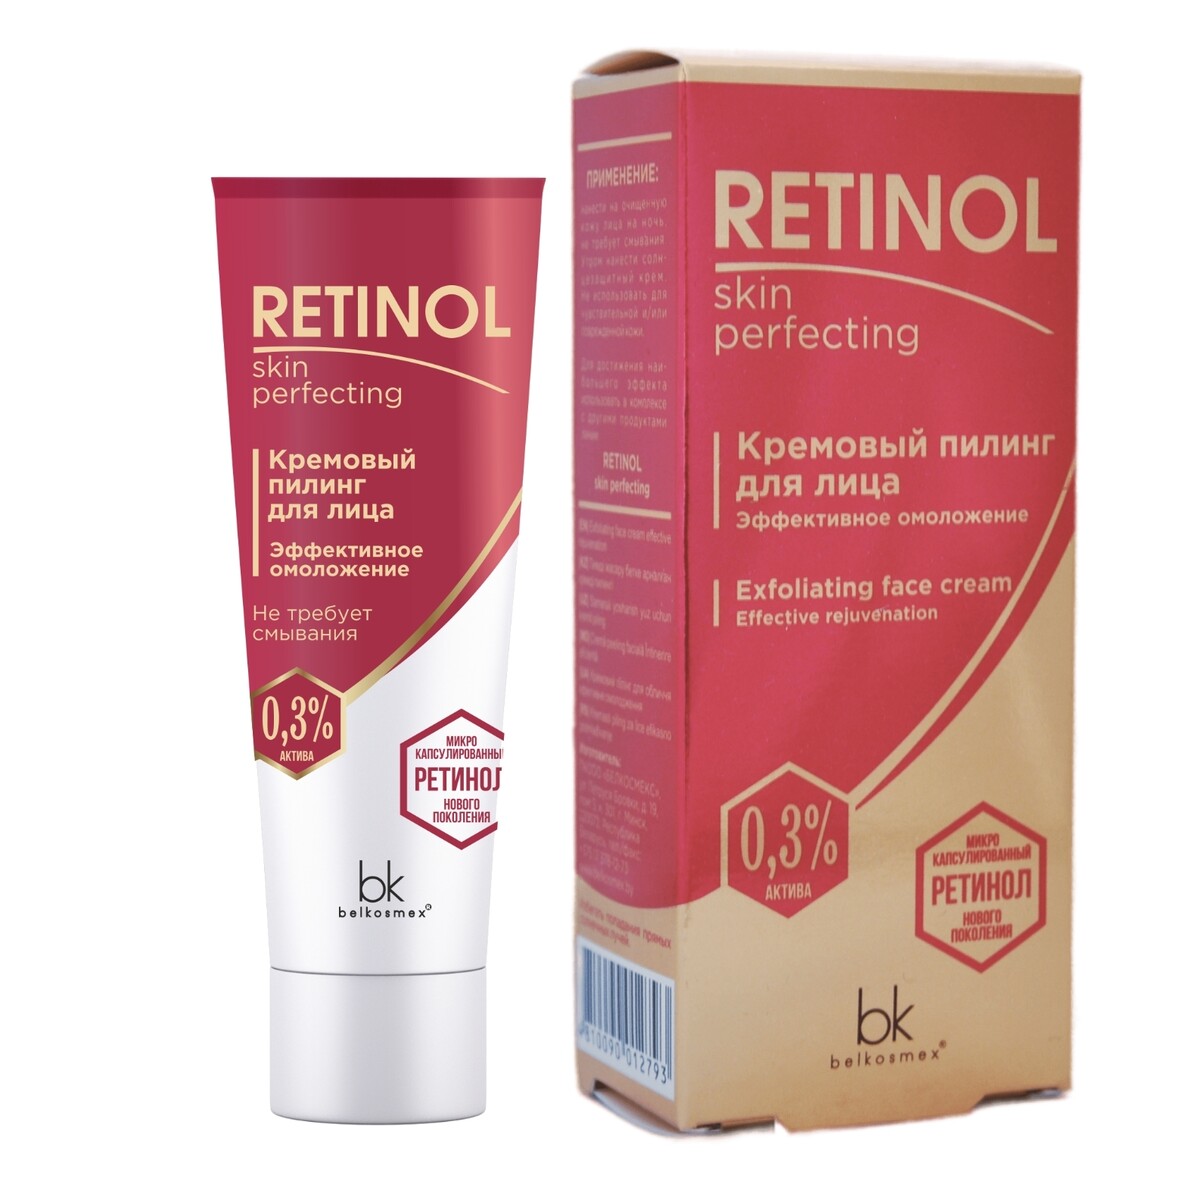 Retinol skin perfecting пилинг для лица кремовый эффективное омоложение 30г